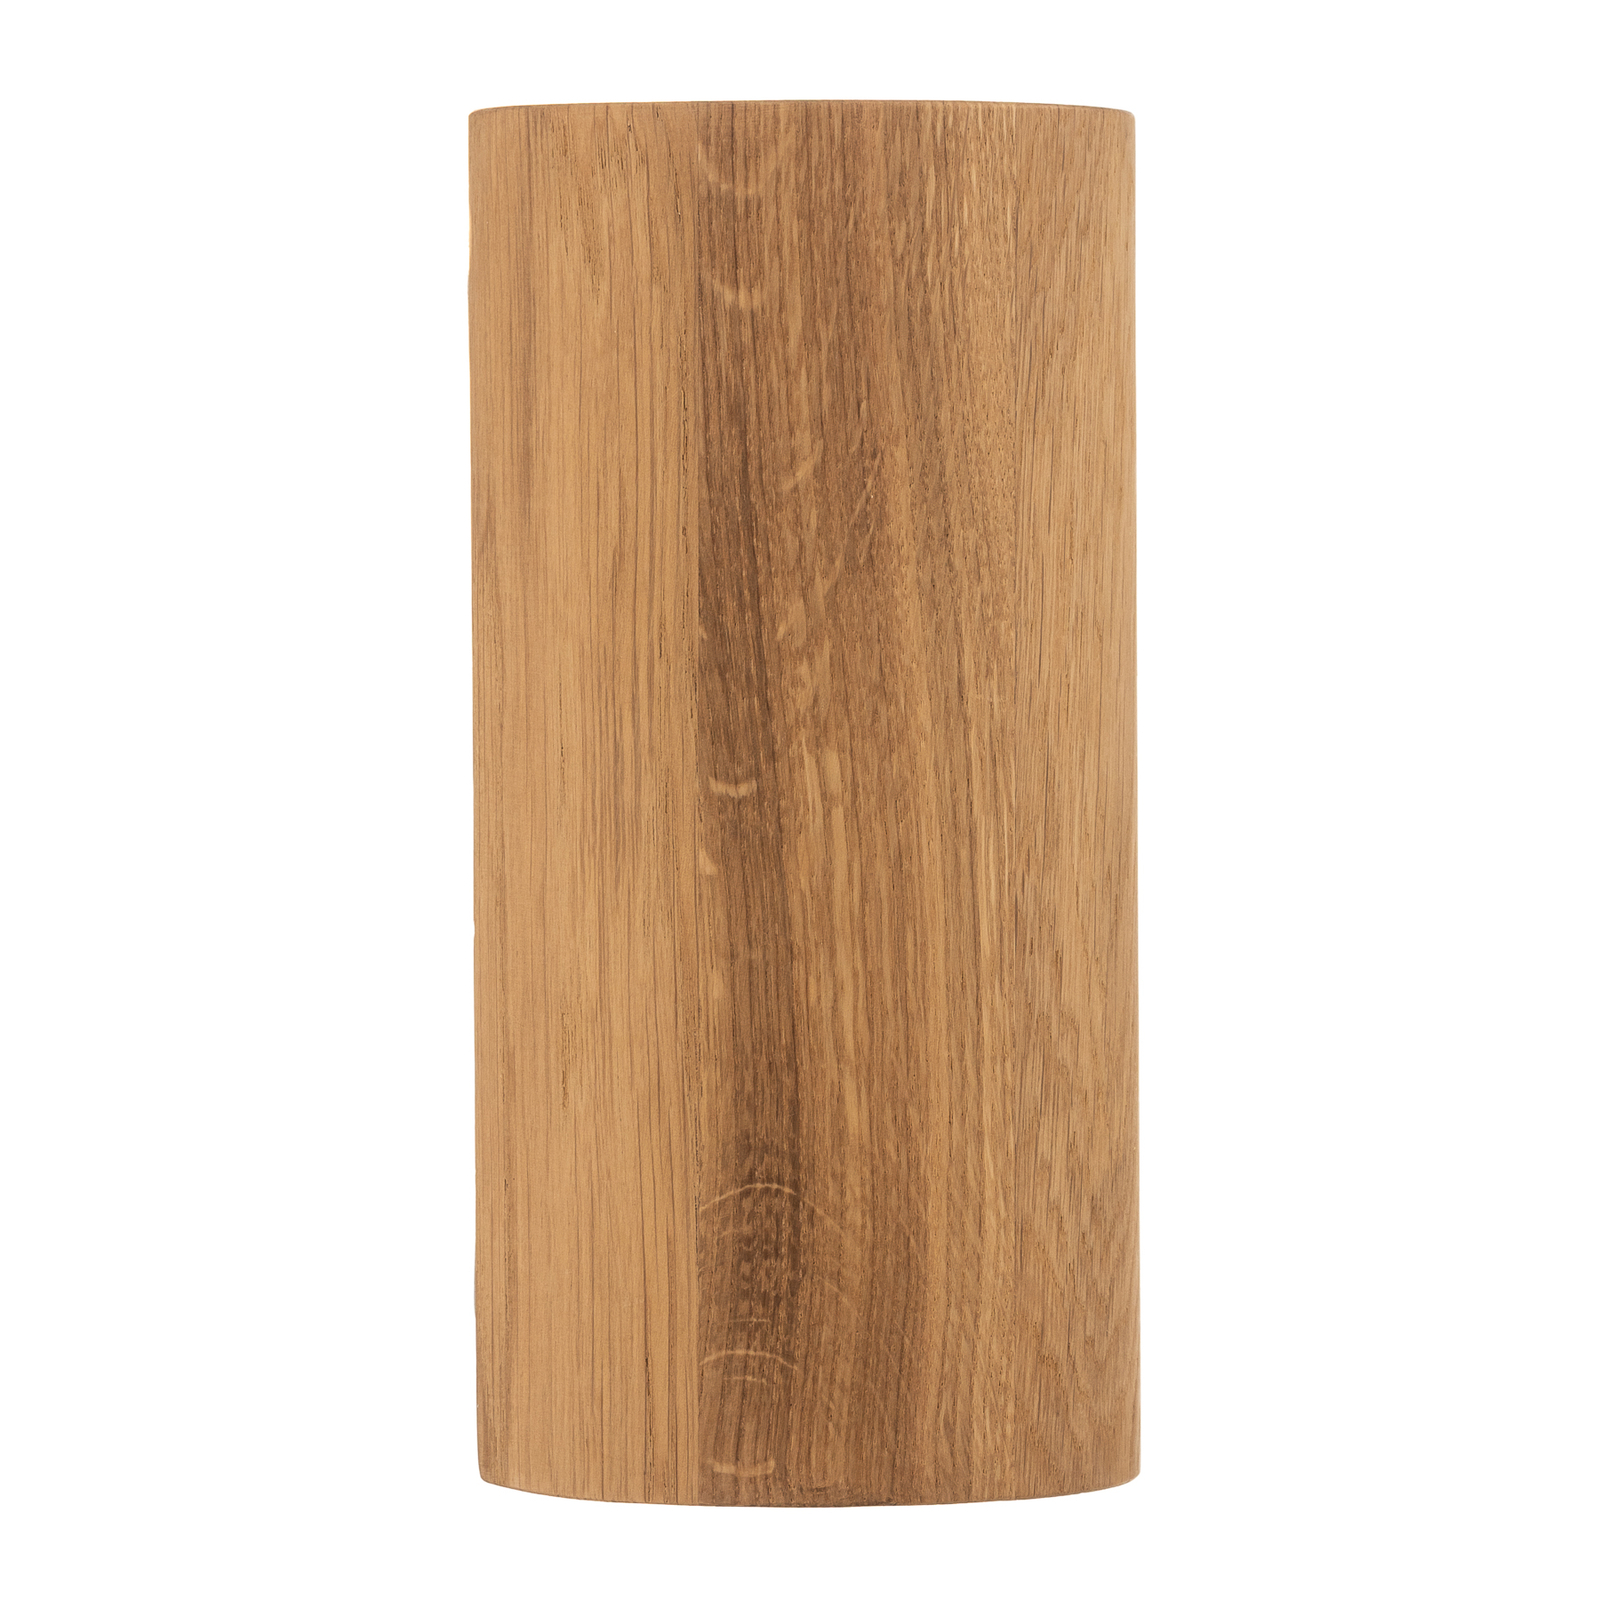 Fali lámpa Wooddream 1-lámpás tölgyfa, kerek, 20cm